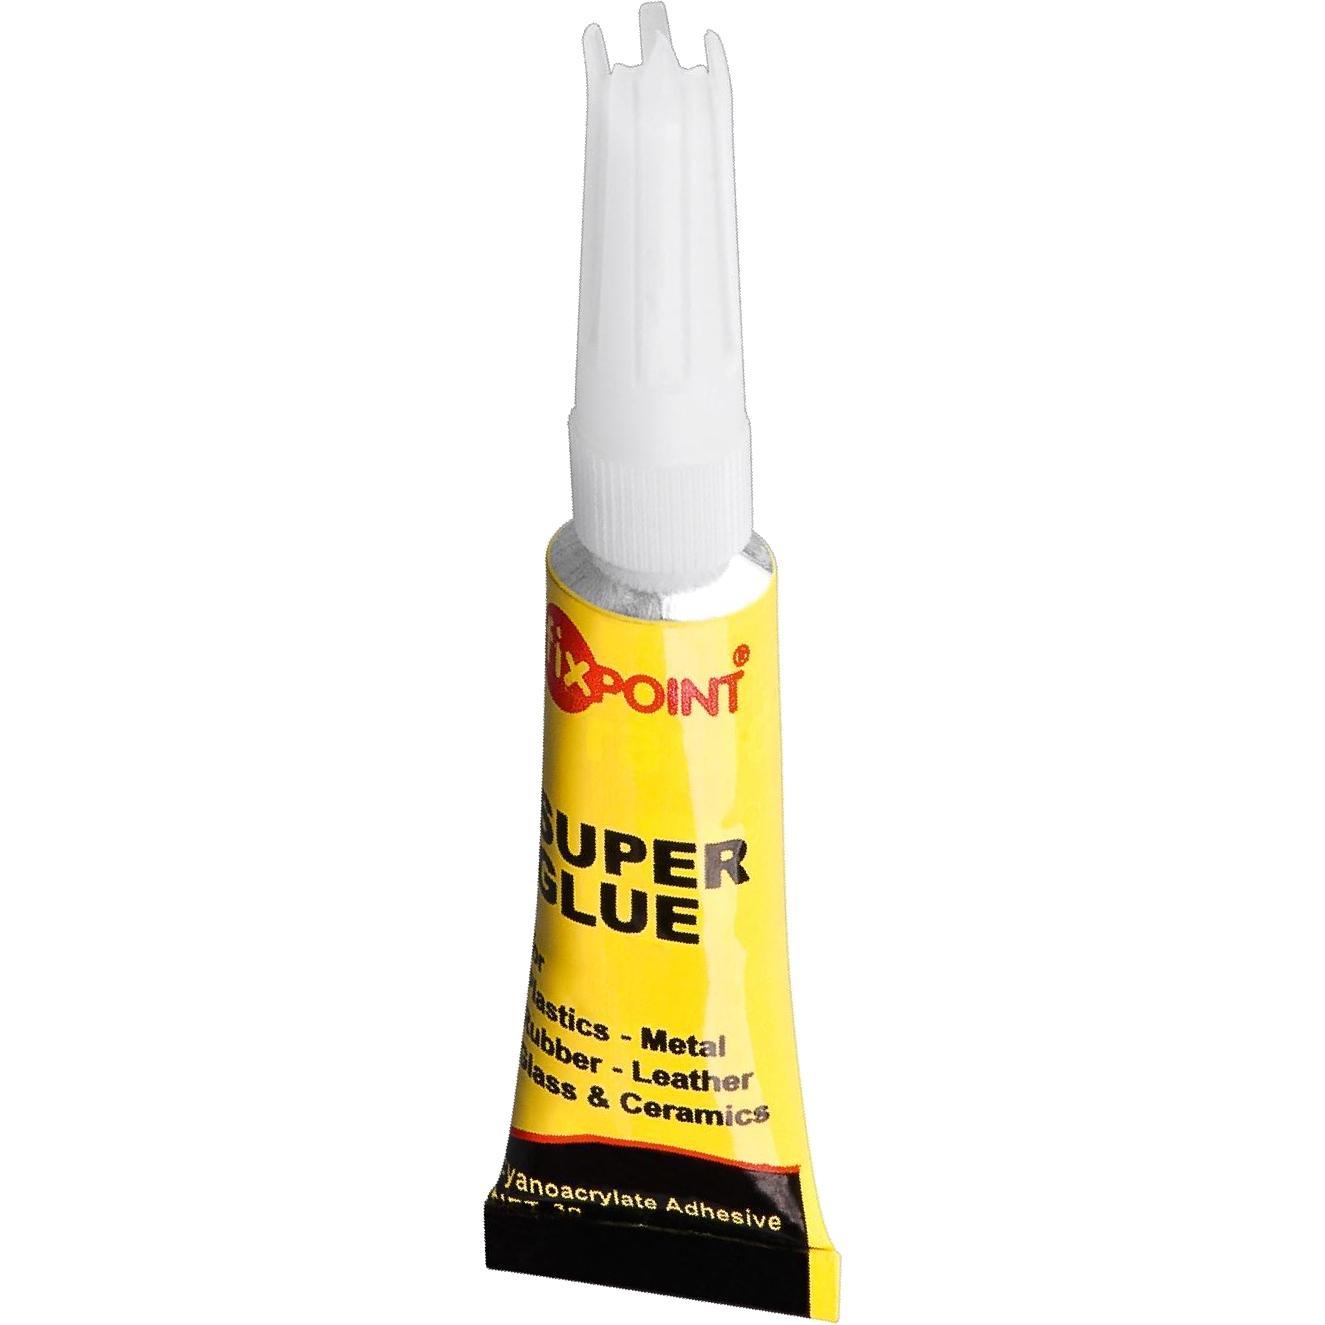 Super glue 3 gram tube